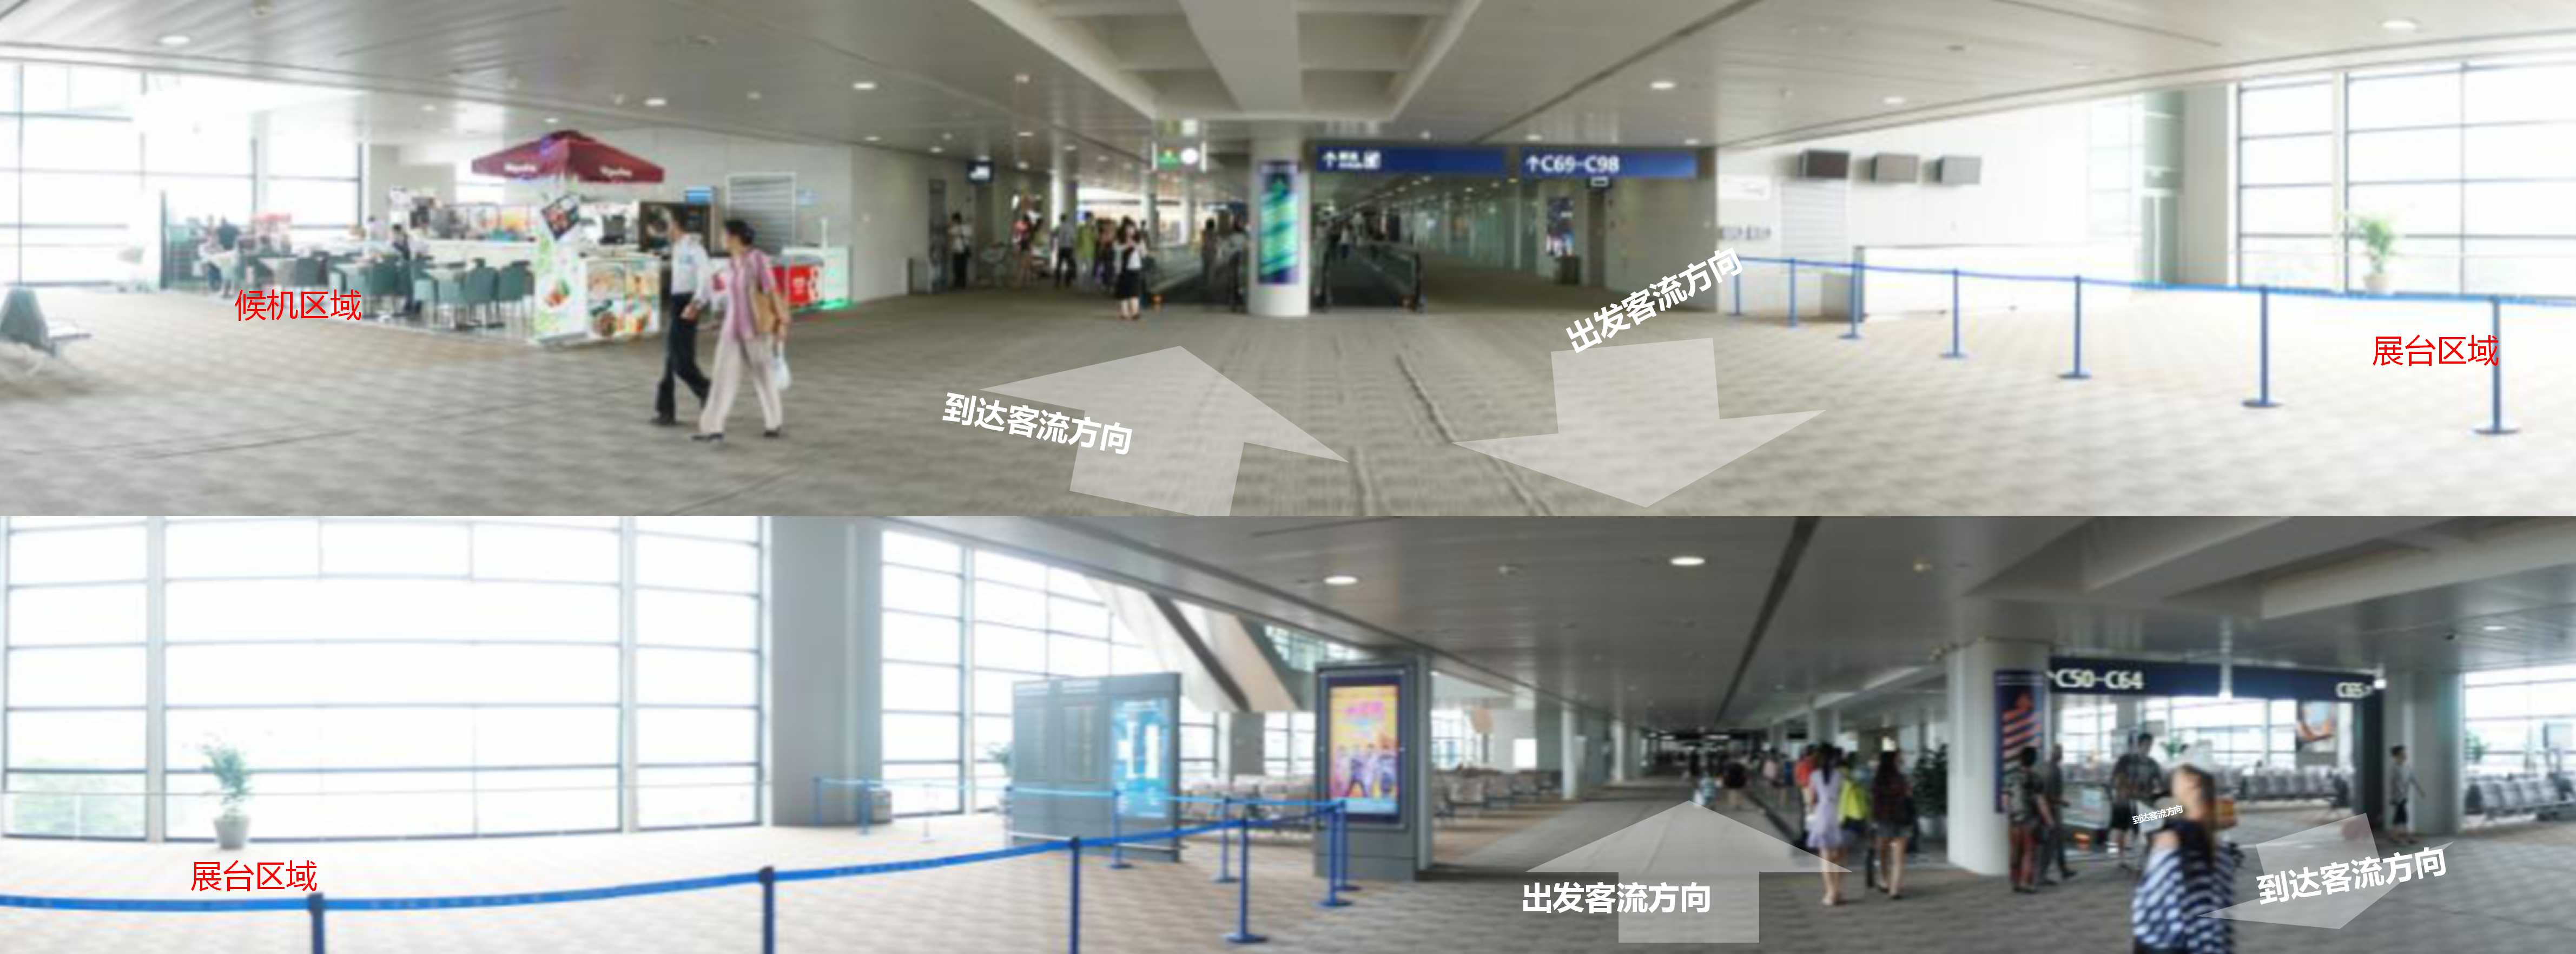 上海机场广告-浦东T2国内出发候机大厅展位